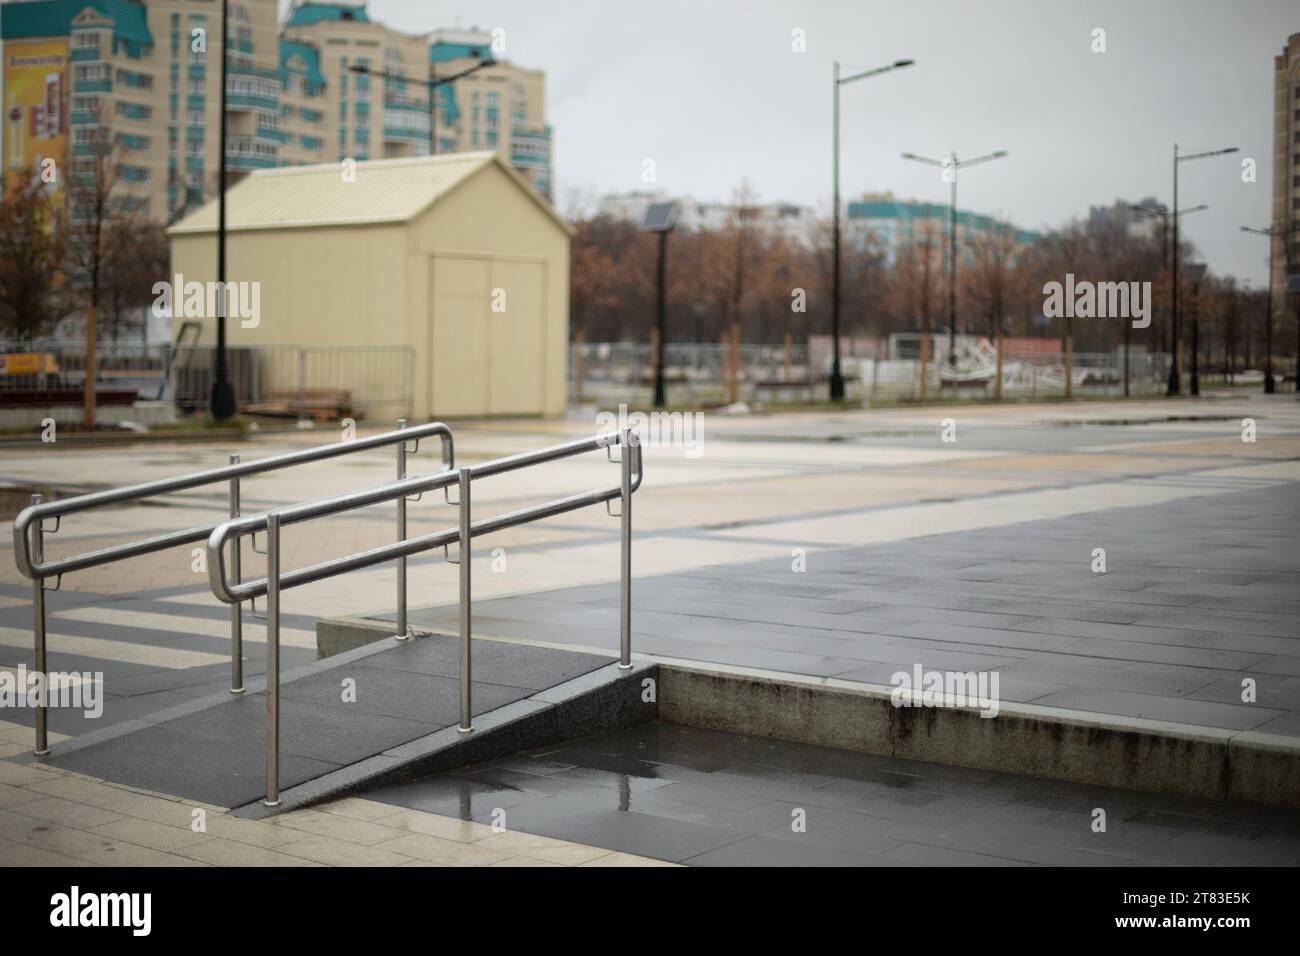 Komfortable Umgebung für Menschen mit Behinderungen. Handlauf auf dem Quadrat. Barrierefreie städtische Umwelt. Stadtplatz. Stockfoto